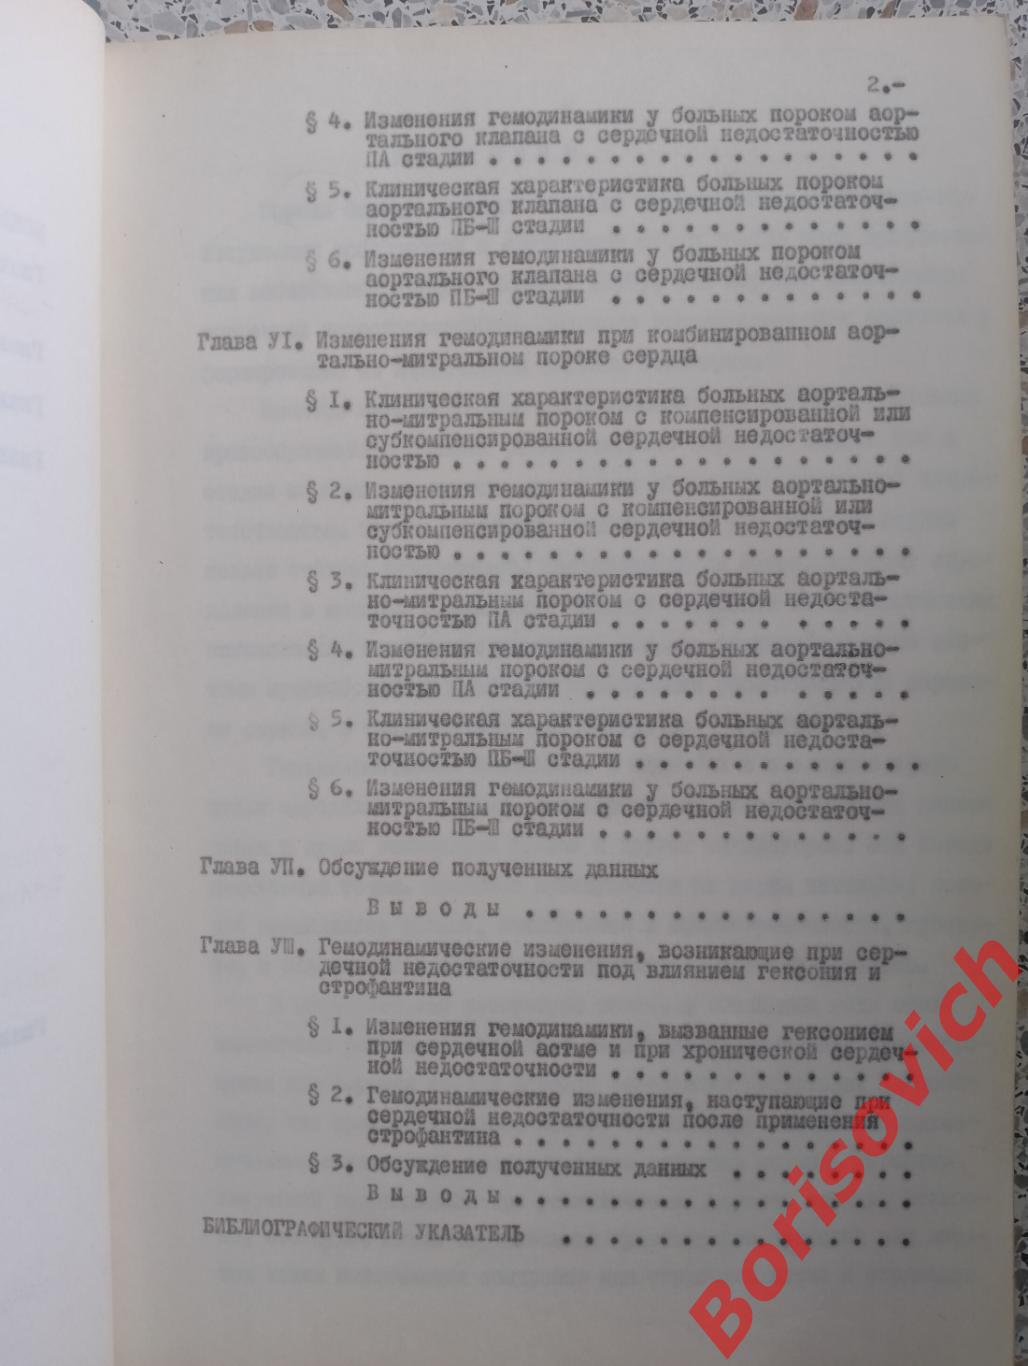 ДИССЕРТАЦИЯ НА СОИСКАНИЕ УЧЁНОЙ СТЕПЕНИ КАНДИДАТА МЕДИЦИНСКИХ НАУК 1965 г 2